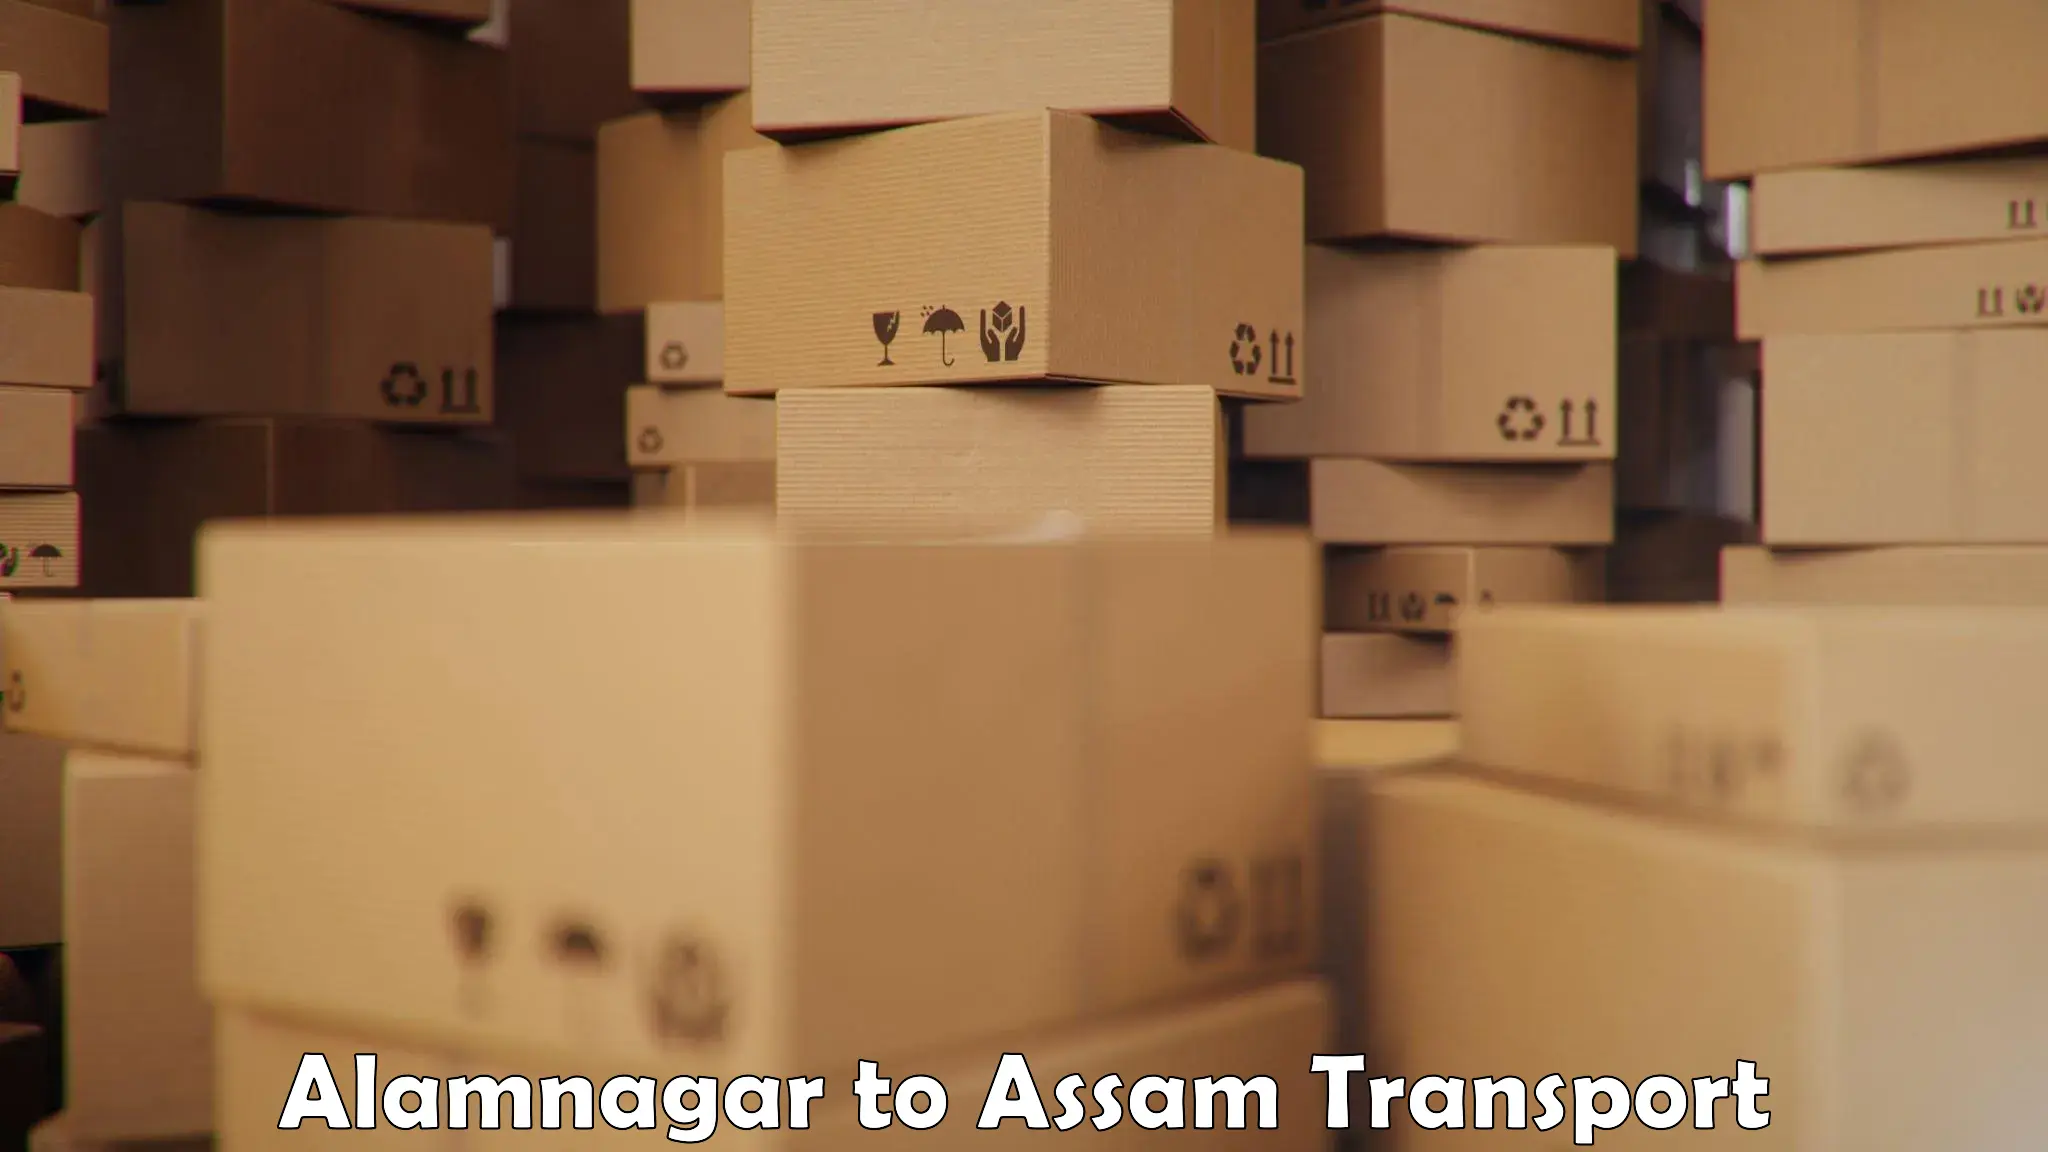 Parcel transport services Alamnagar to Dhubri